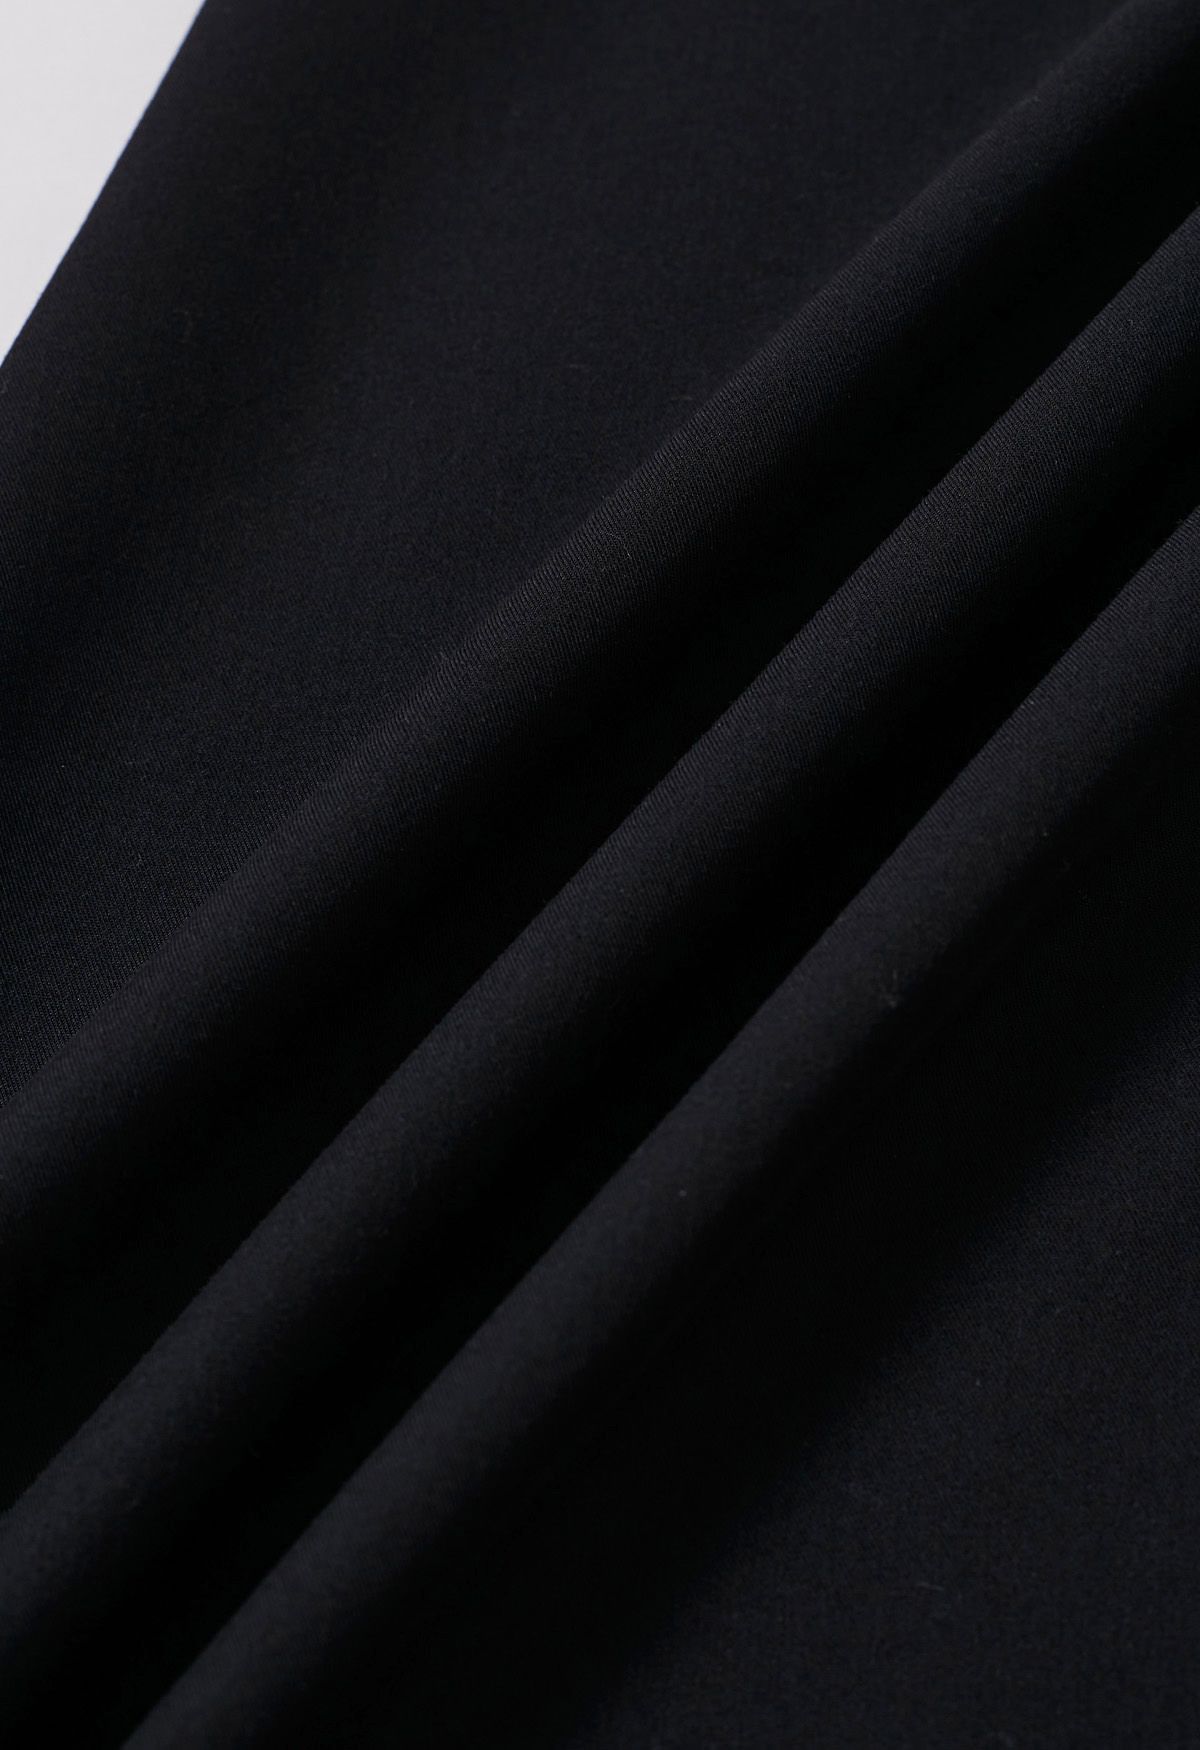 Jupe longue à taille plissée contrastée en noir